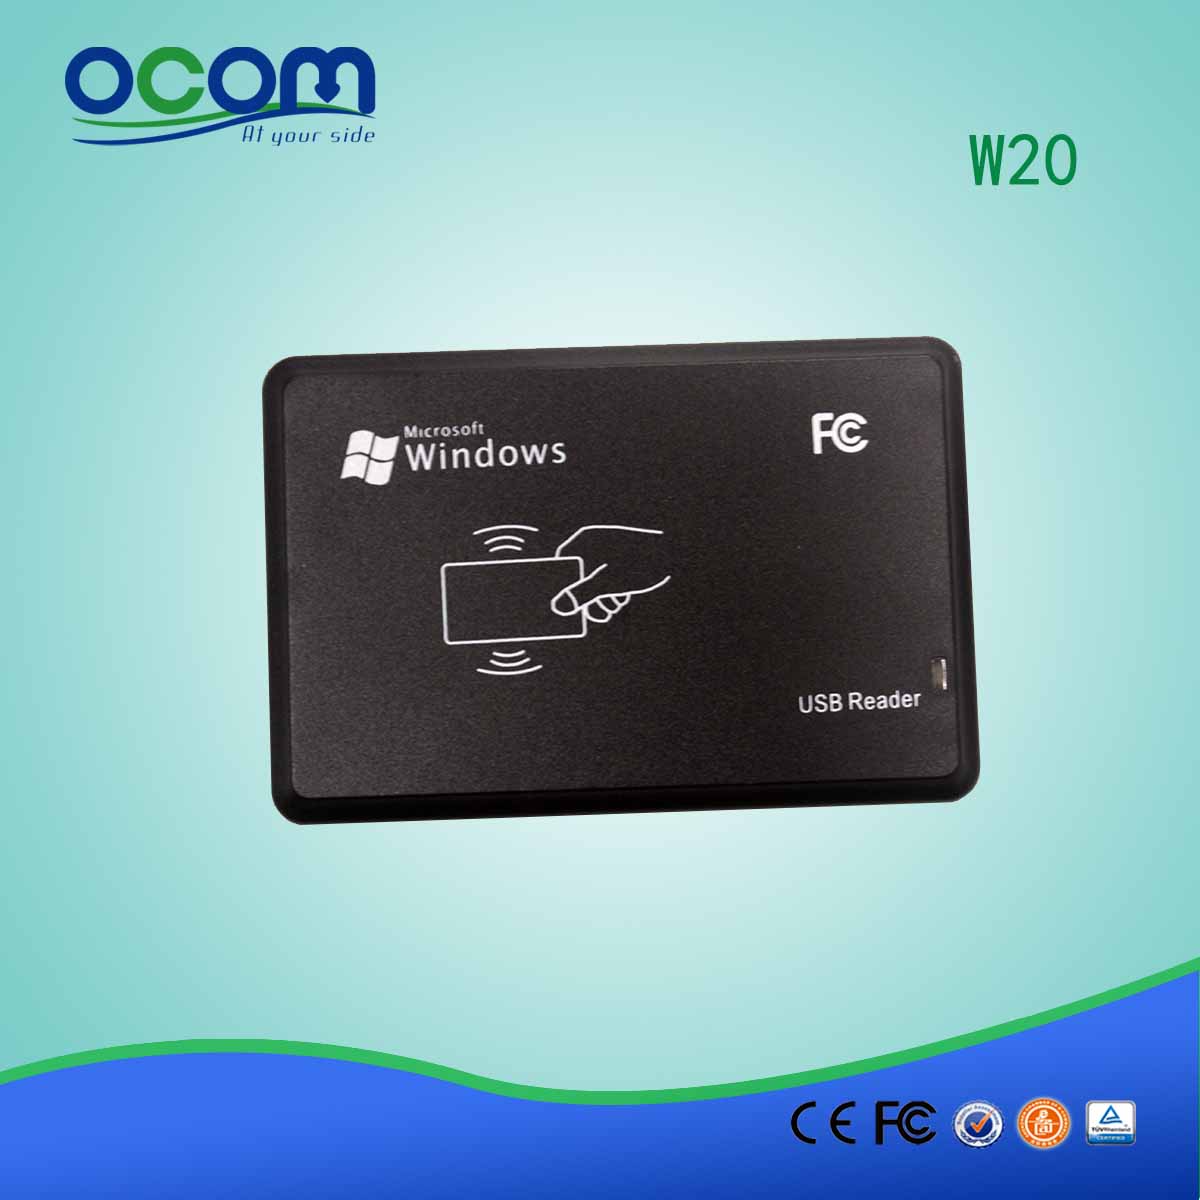 Αναγνώστη κάρτας RFID OCOM W20 και συγγραφέας USB ή σειριακή θύρα για επιλογές